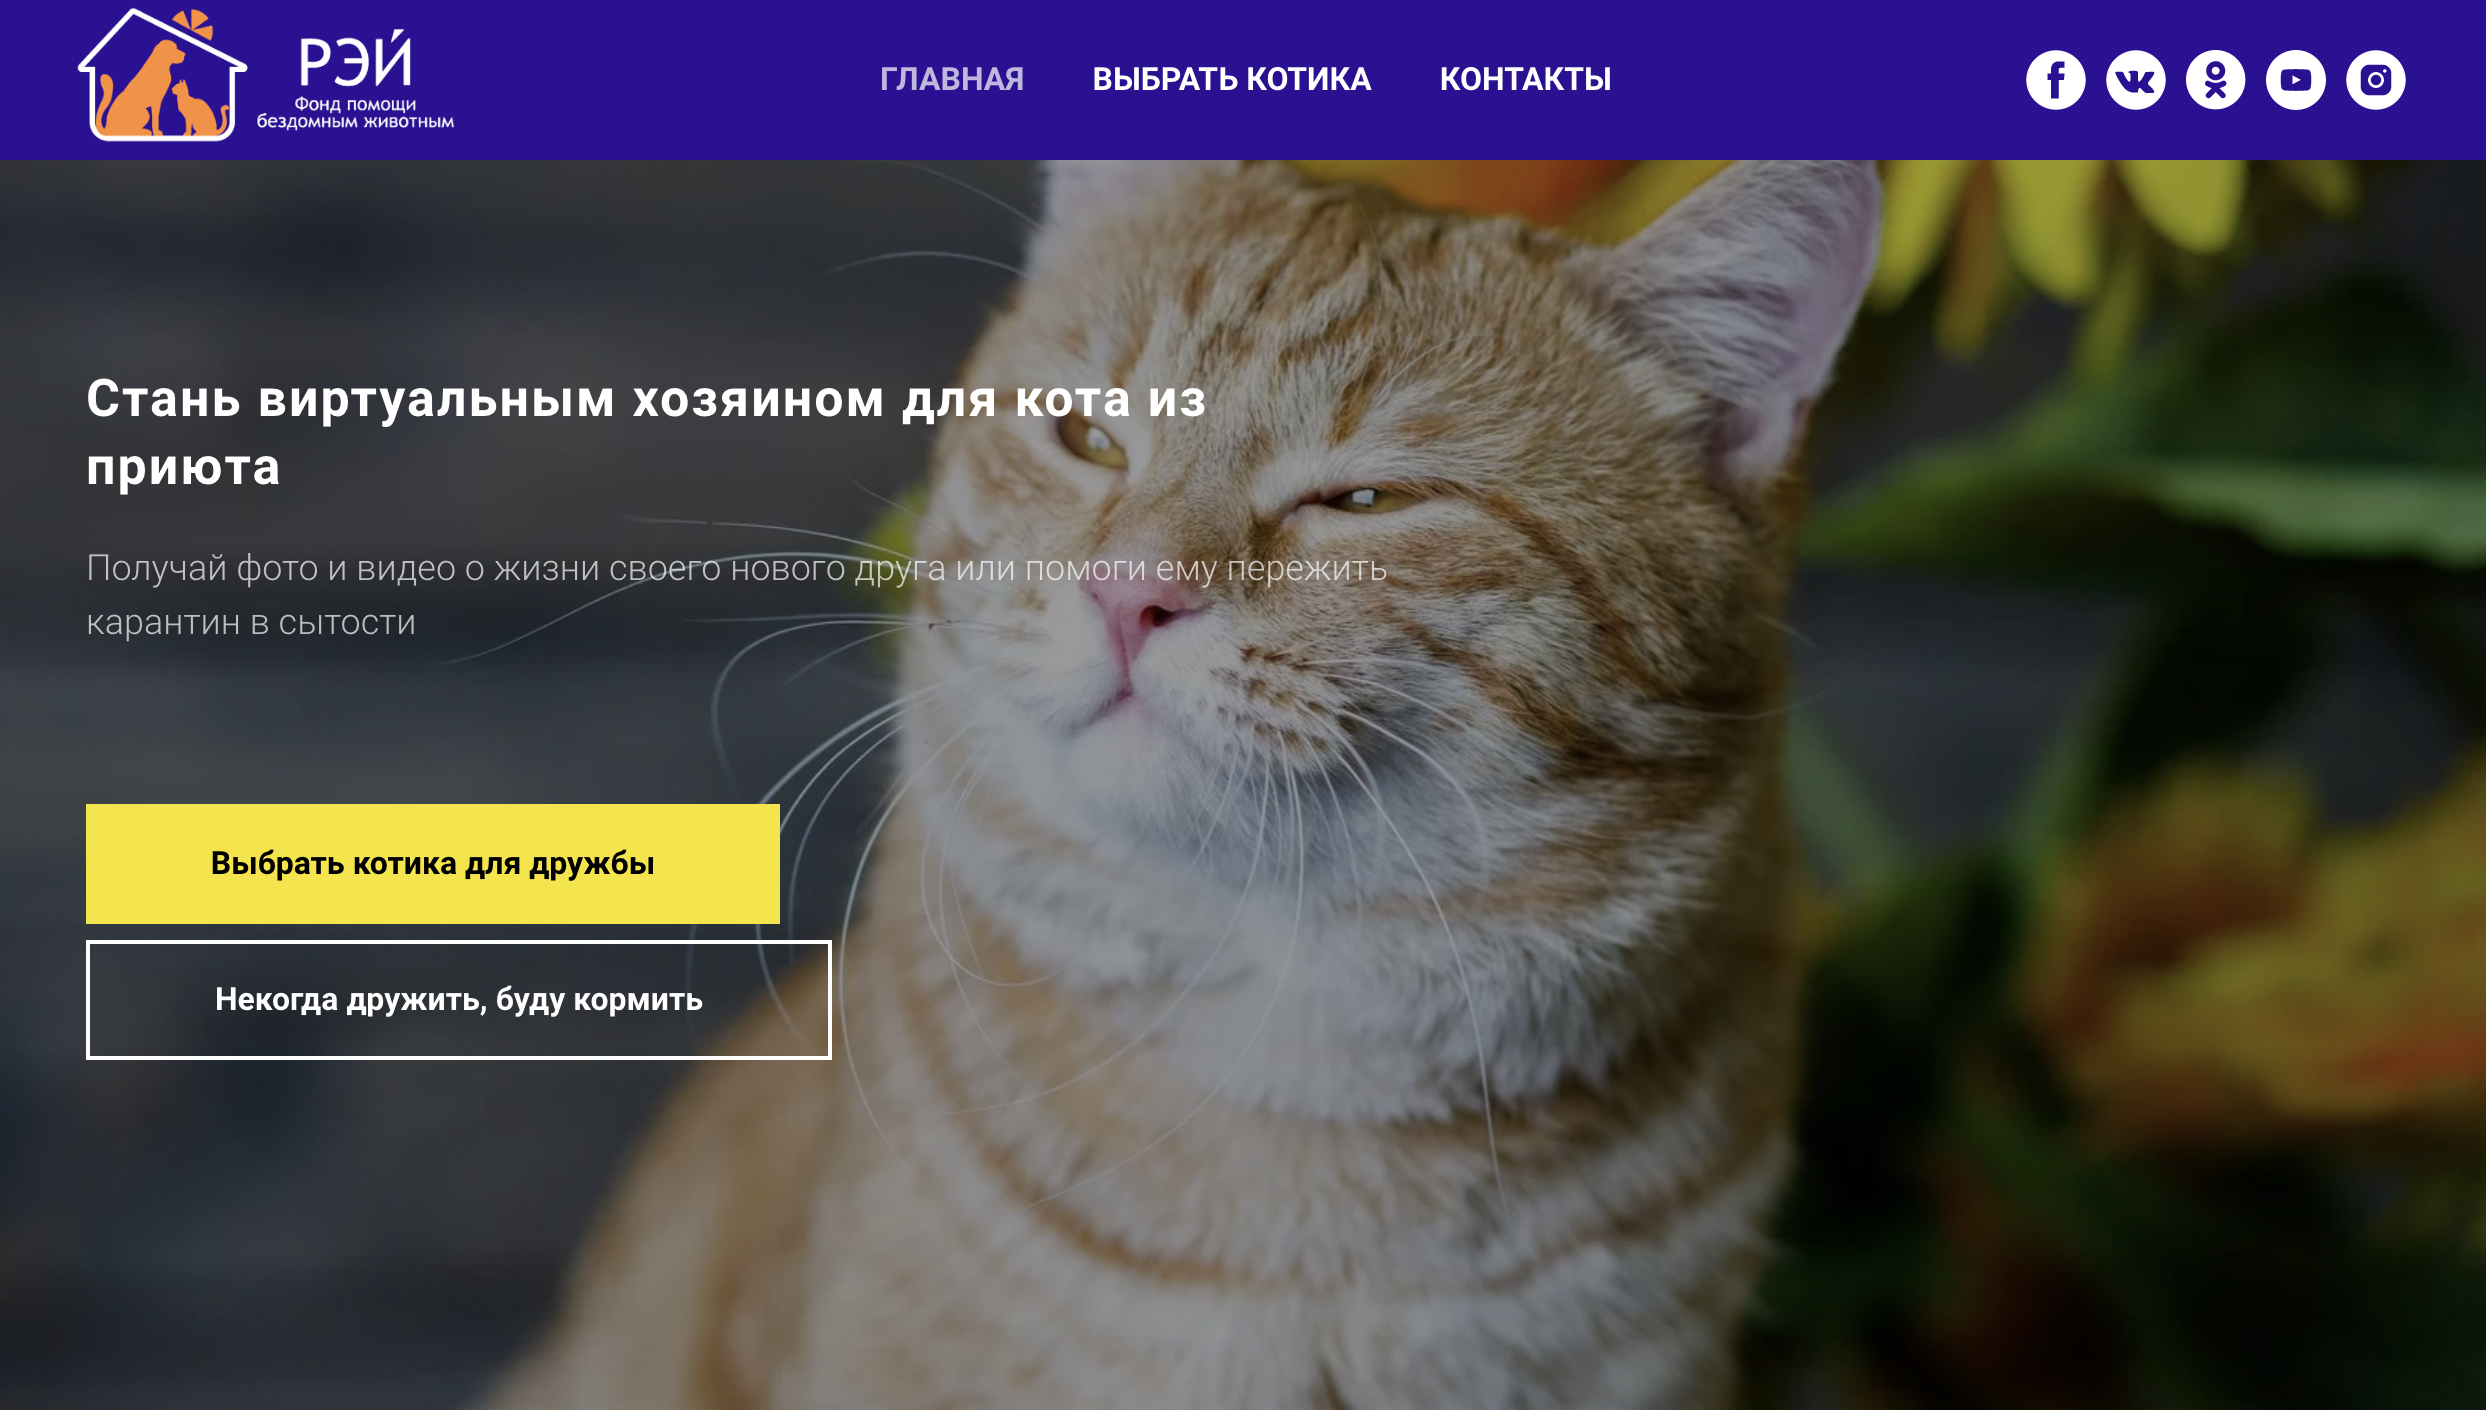 Фонд "Рэй" запустил актуальную кампанию "Стань виртуальным хозяином для кота из приюта". Изображение: скриншот с главной страницы сайта webcat.rayfund.ru